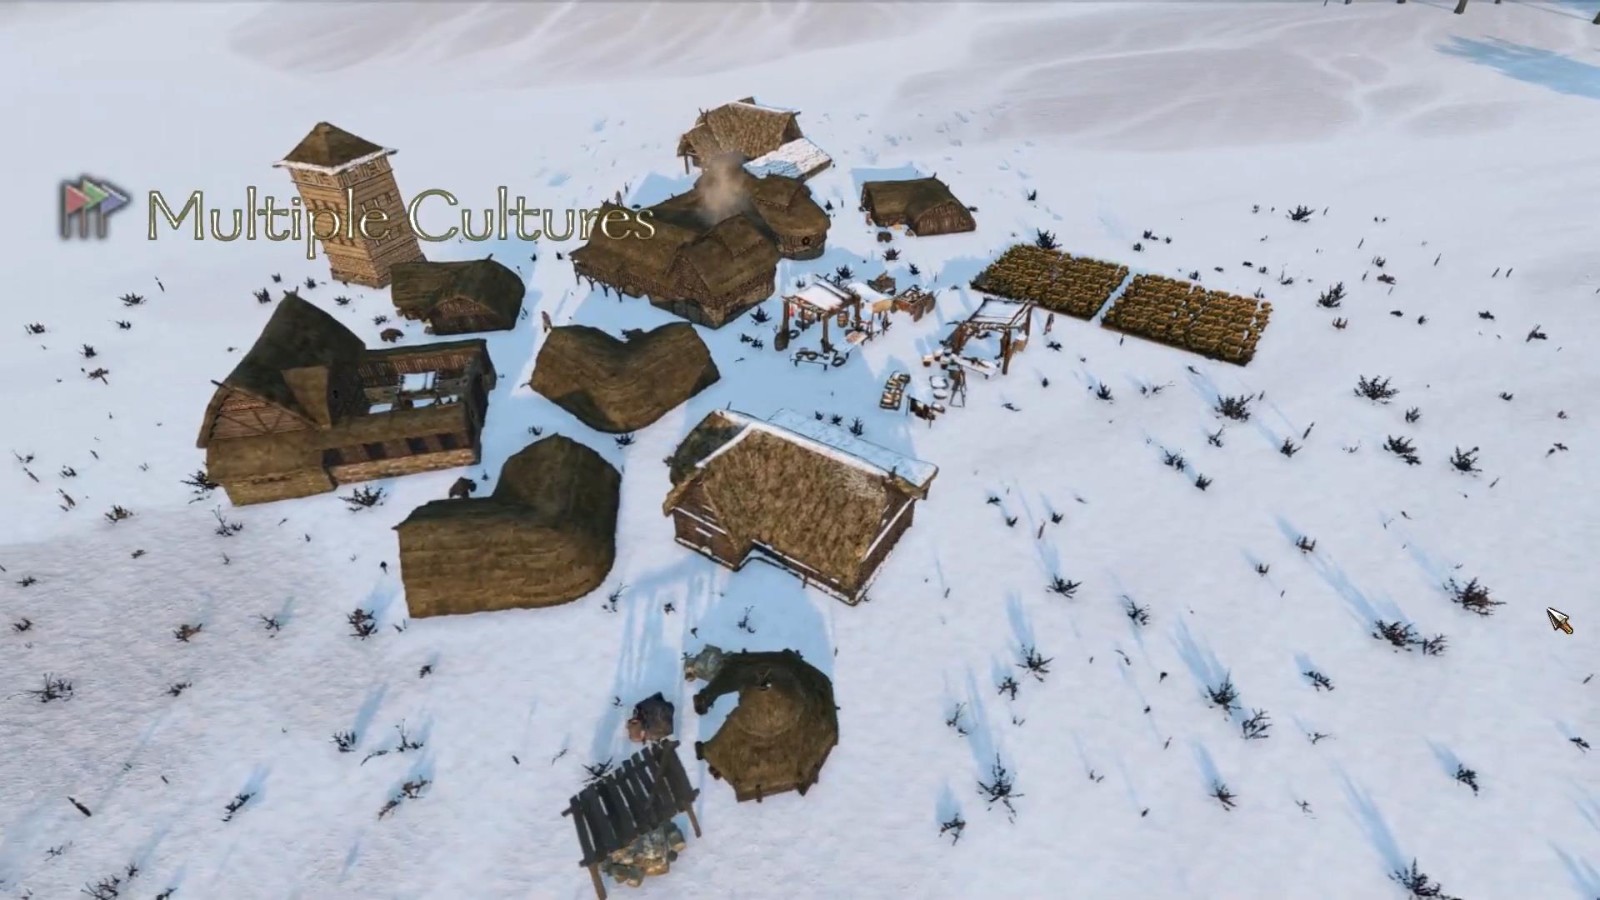 《騎馬與砍殺2》超強Mod 讓玩家享受RTS遊戲體驗